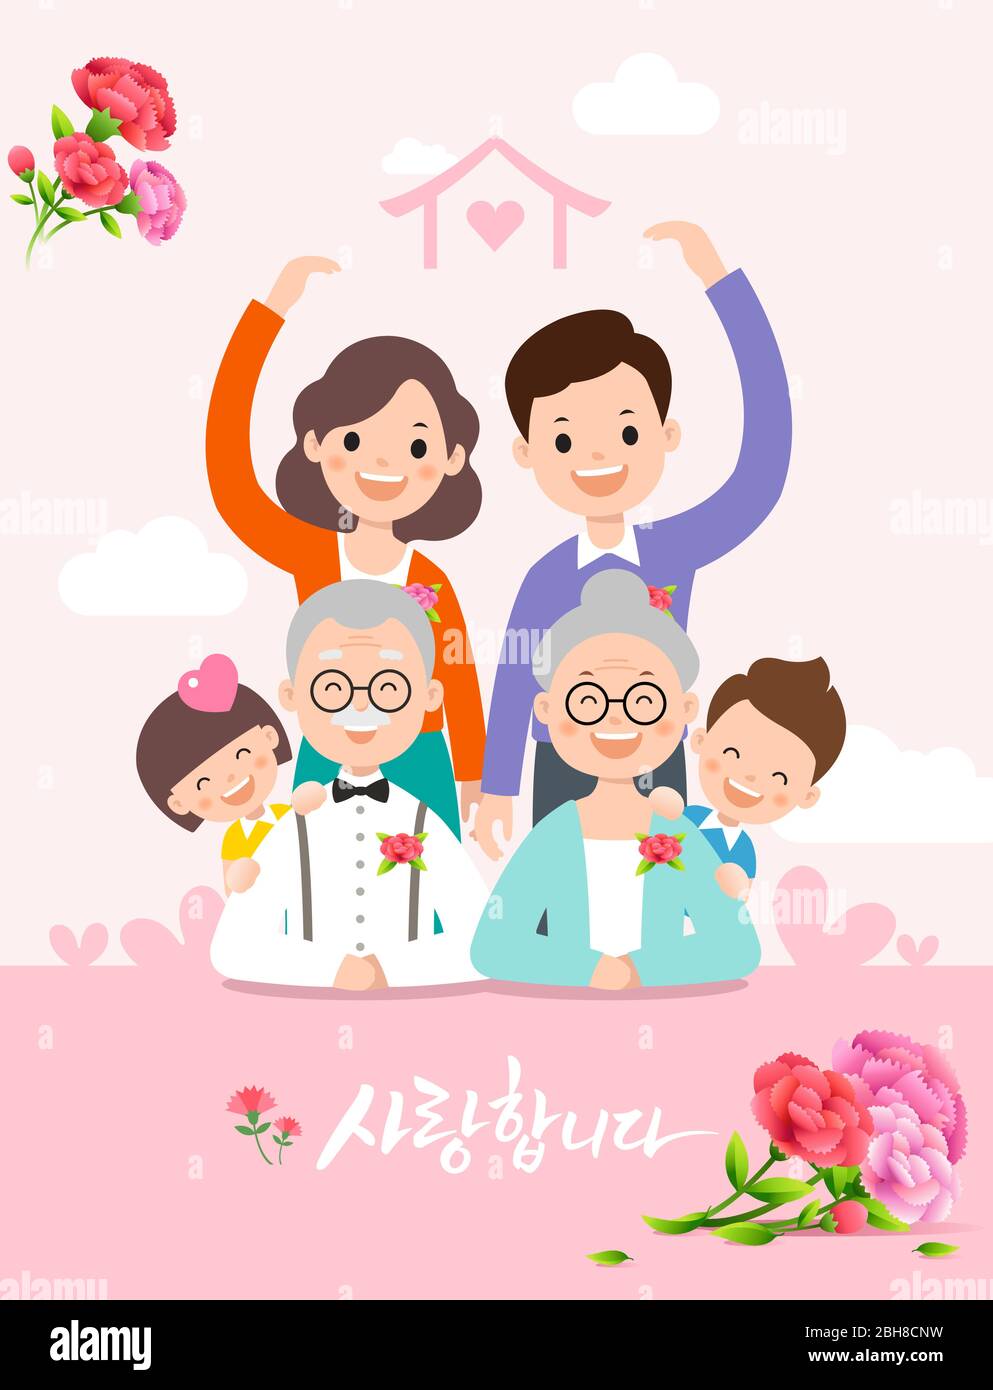 Elterntag, glückliche Familie, Vater, Mutter, Großvater, Großmutter, Kinder und Nelke Blumen. Ich liebe dich, koreanische Übersetzung. Stock Vektor